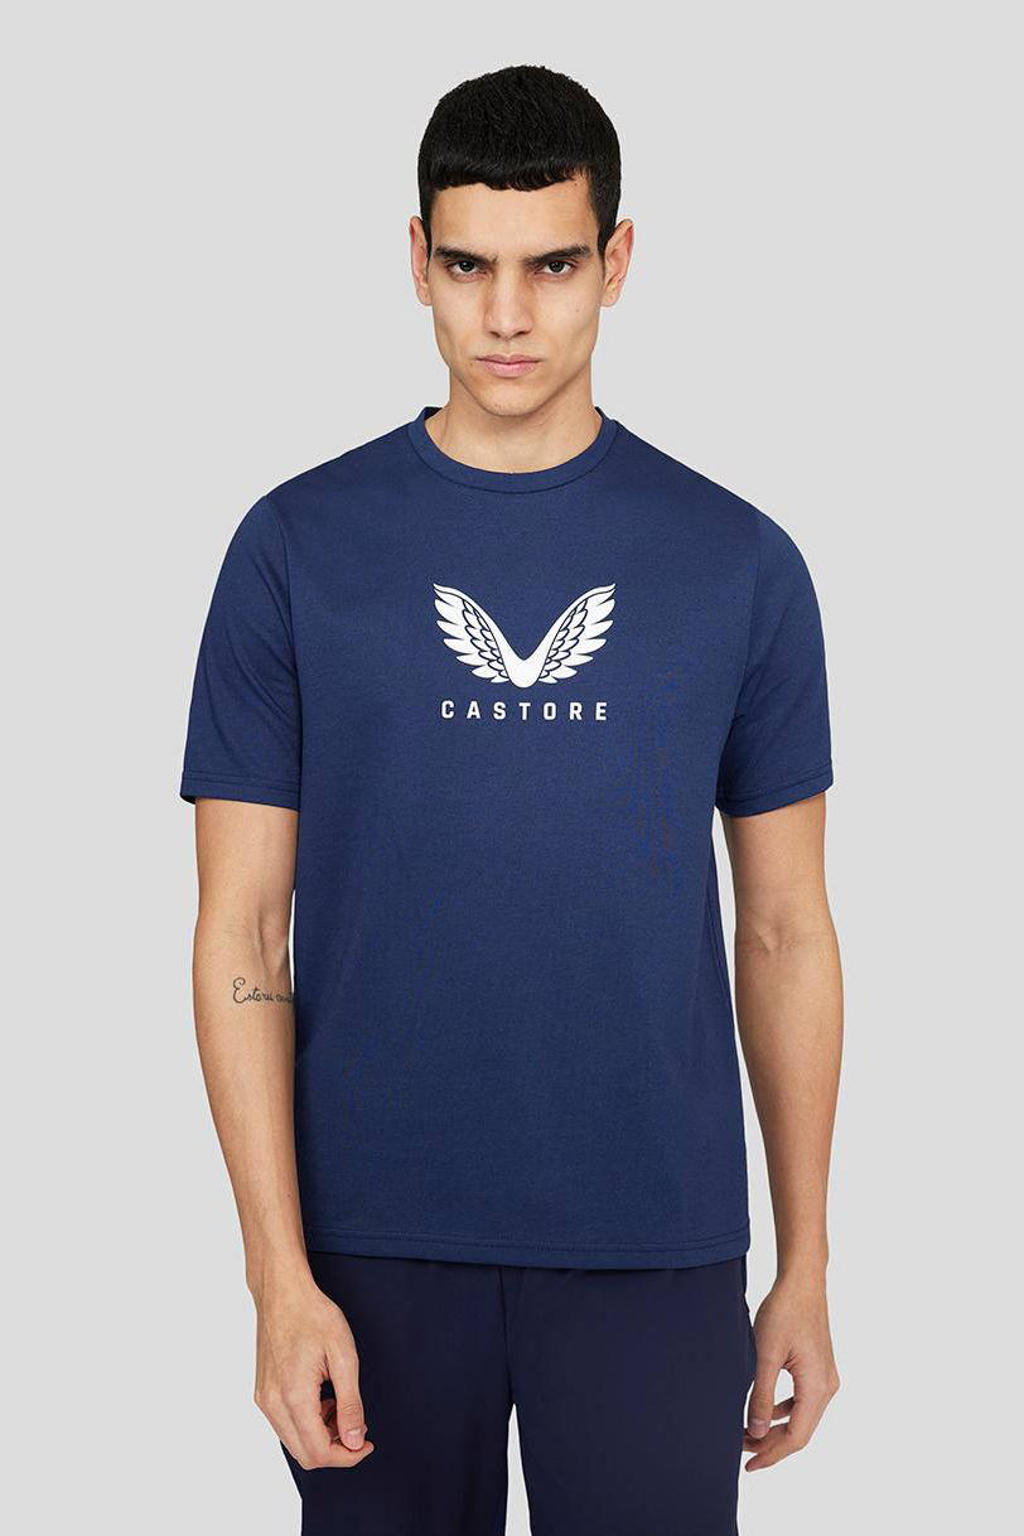 Donkerblauw en witte heren Castore sport T-shirt met logo dessin, korte mouwen en ronde hals